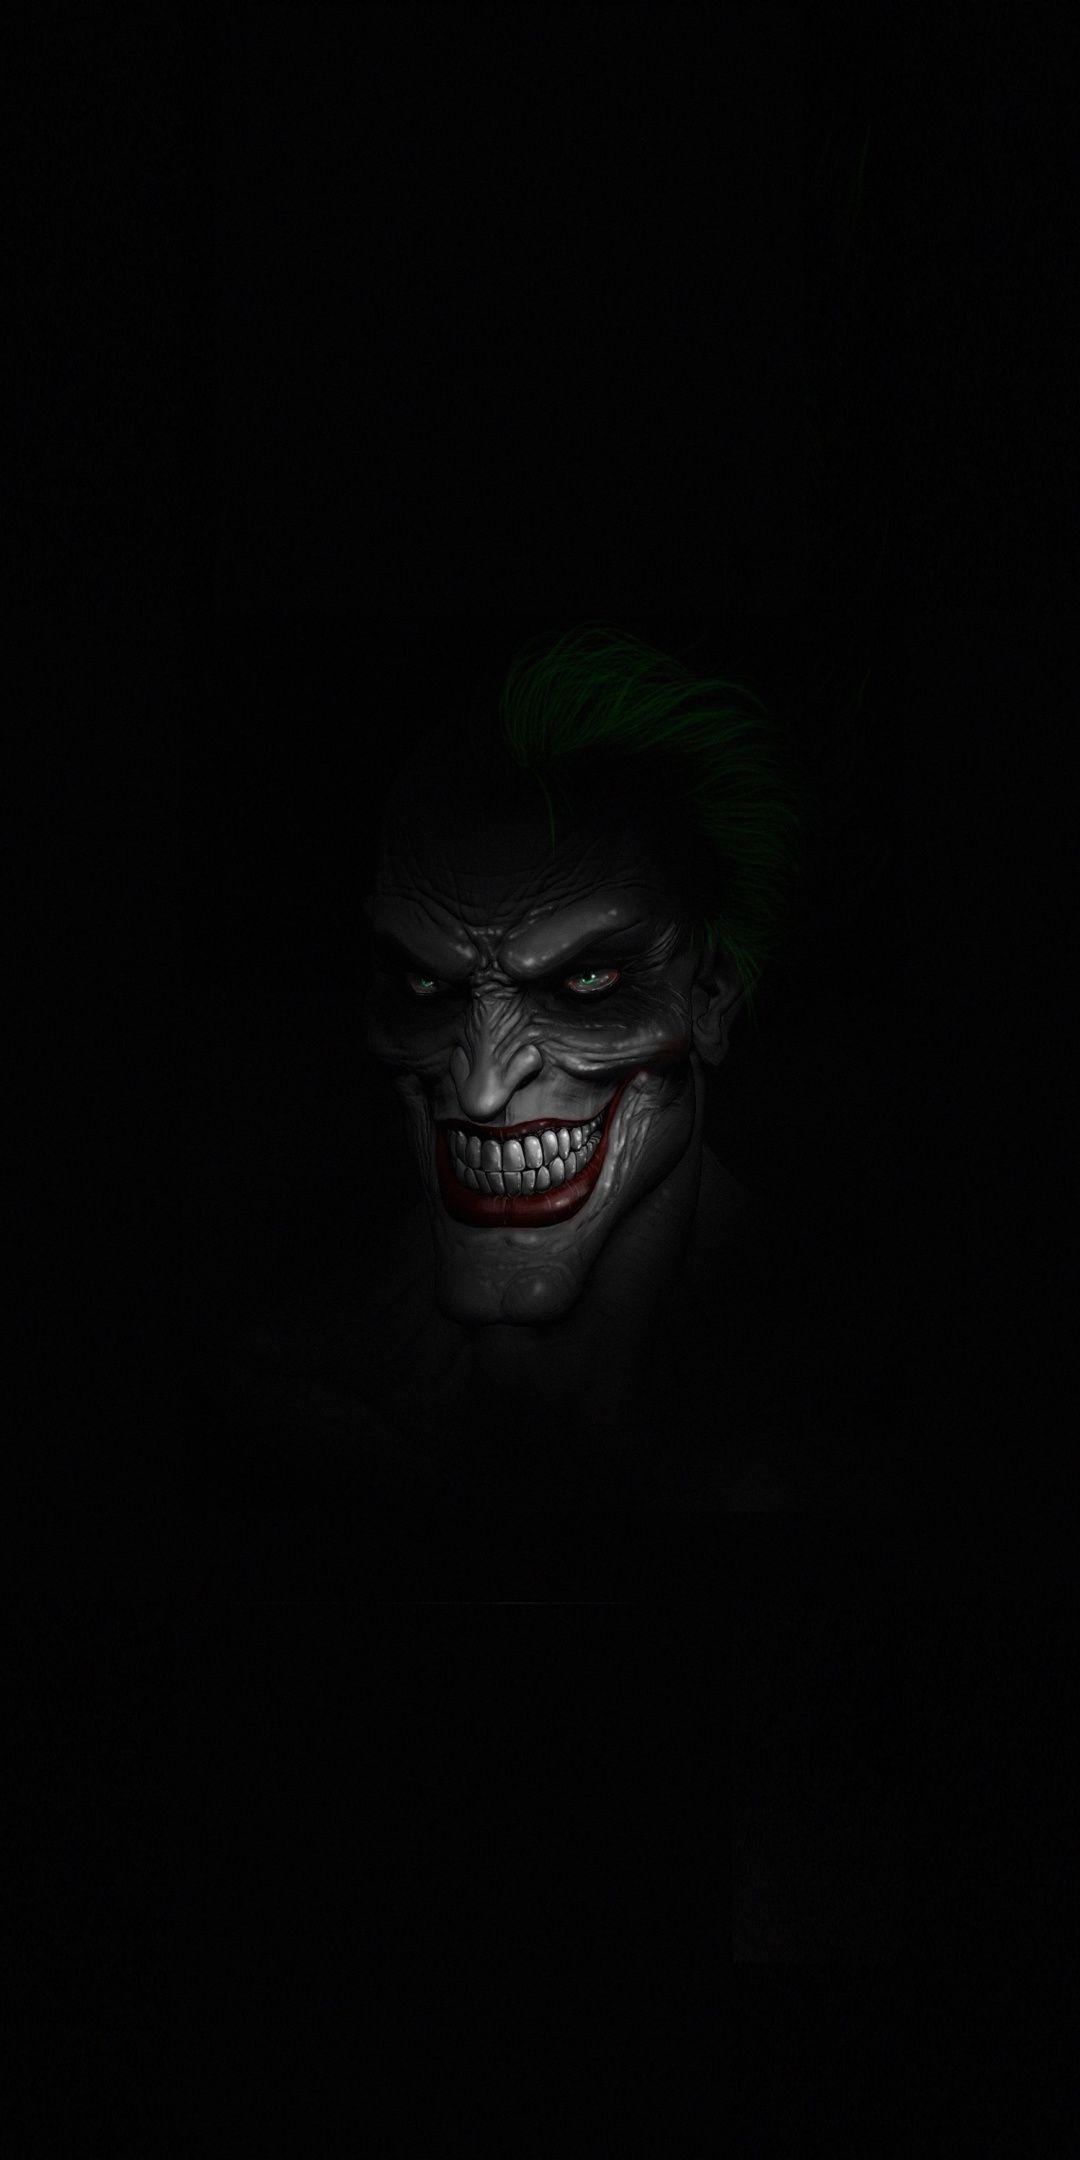 Joker Black And White Wallpaper